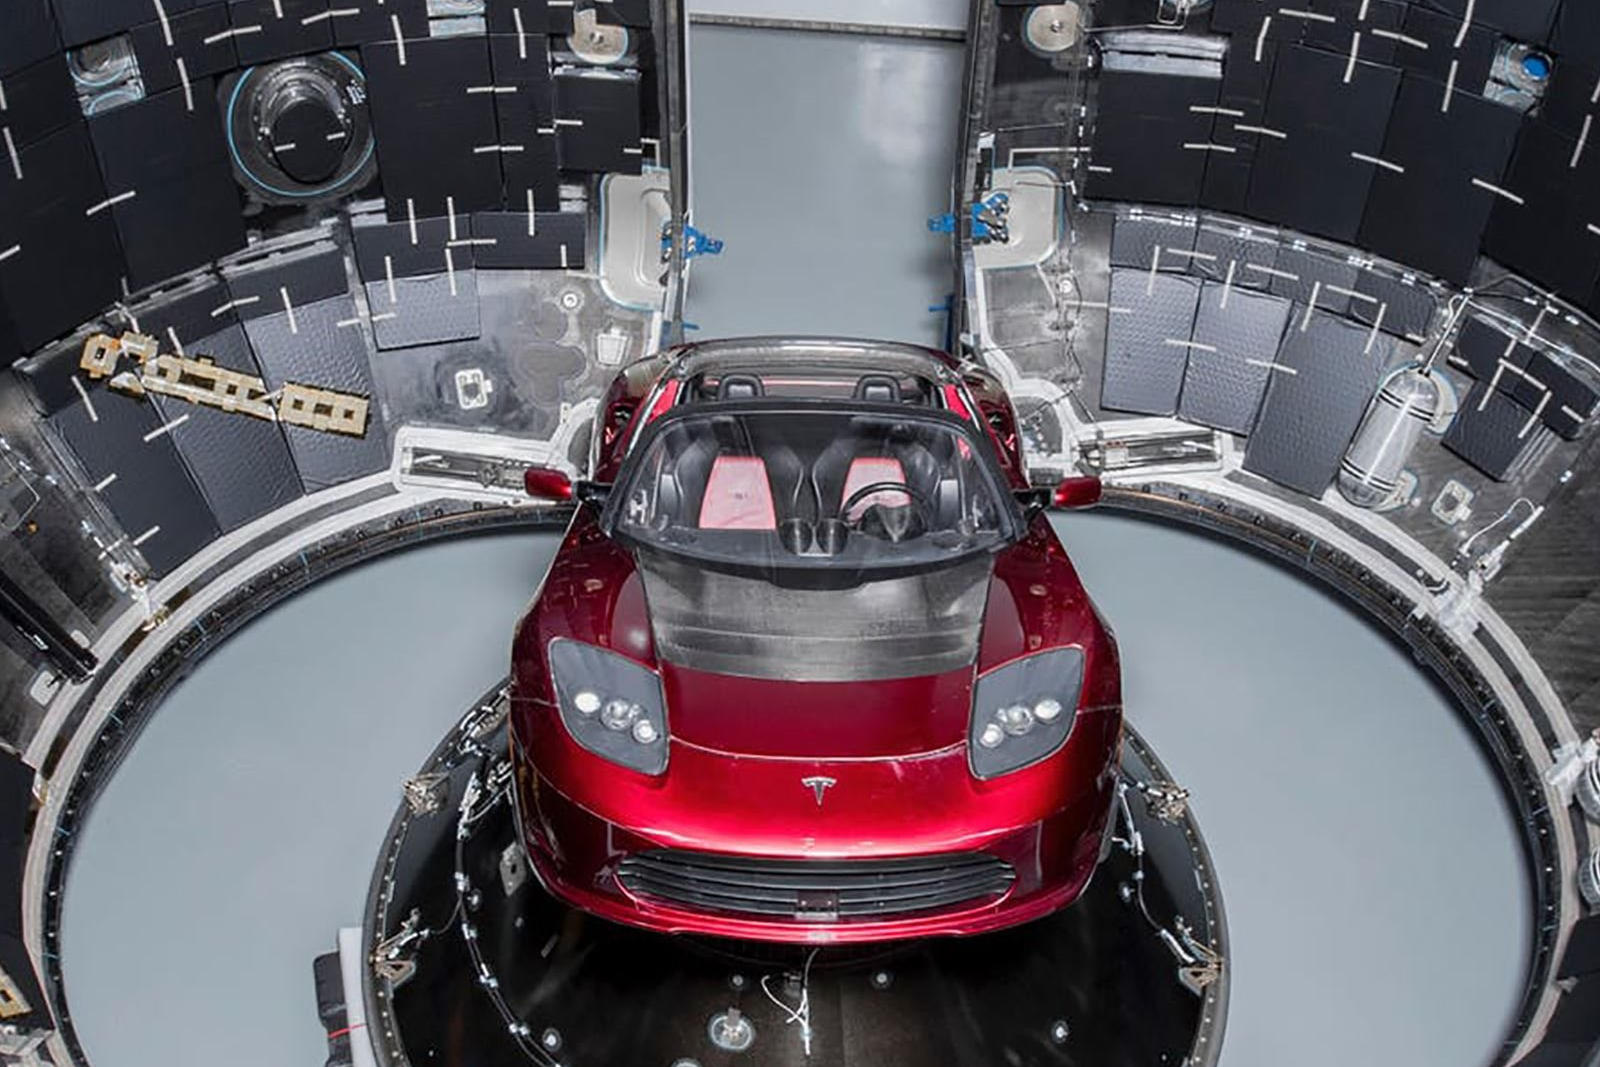 Tesla Roadster, который, как говорят, разгоняется от 0 до 100 км/ч за 1,9 секунды, развивает максимальную скорость 400 км/ч и имеет максимальную дальность хода 990 км, в настоящее время находится в 60 миллионах км от нашей планеты и обращается вокруг